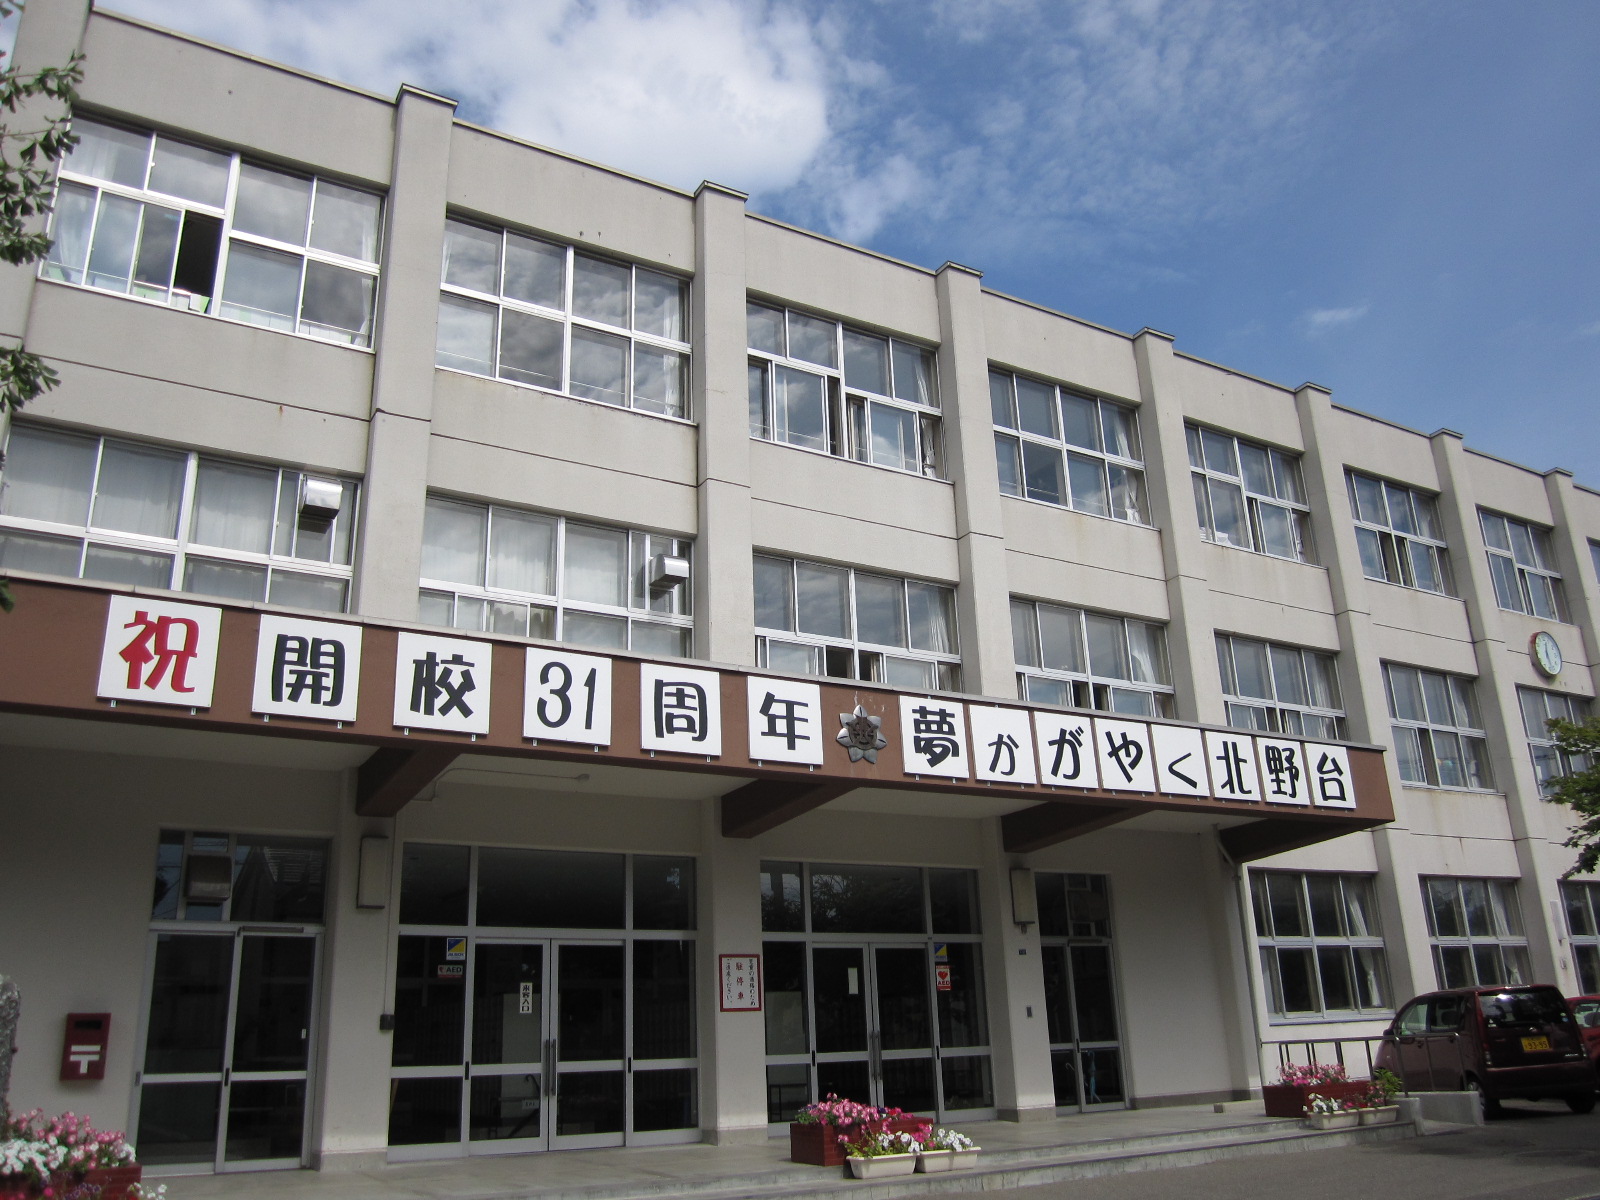 Primary school. 971m to Sapporo Municipal Kitanodai elementary school (elementary school)